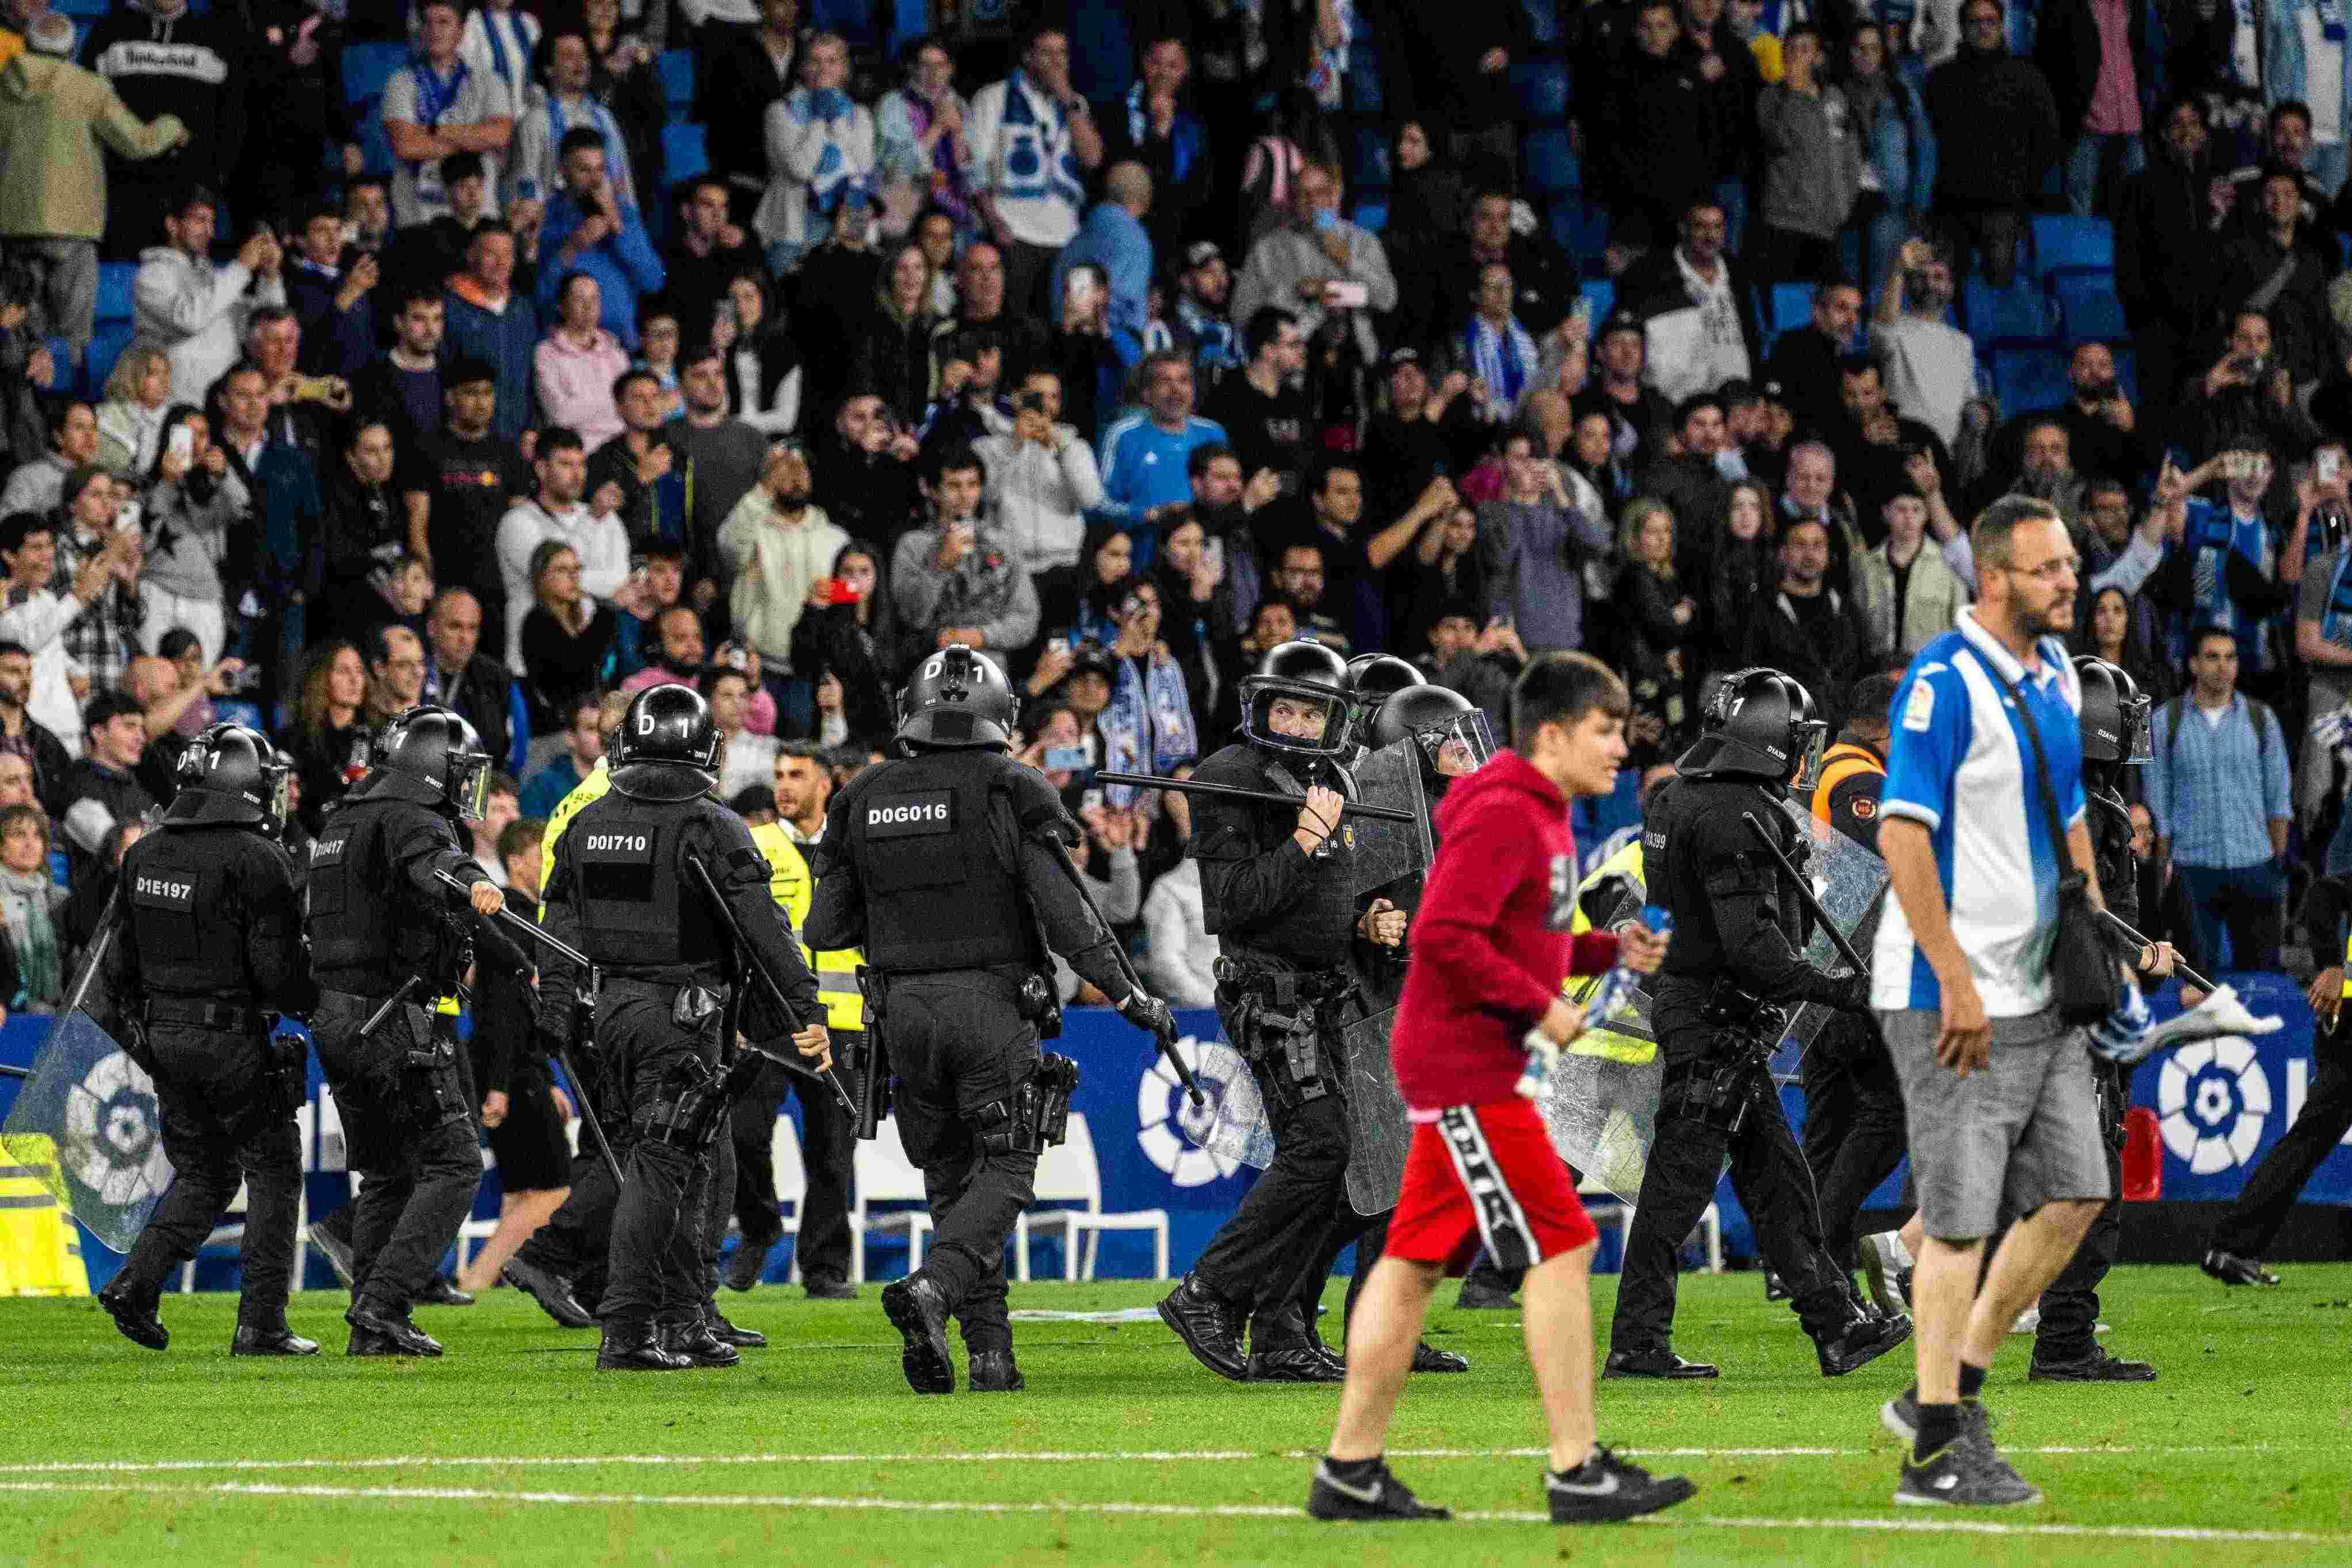 Los Mossos detienen más implicados en el asalto violento al campo del Espanyol del partido contra el Barça